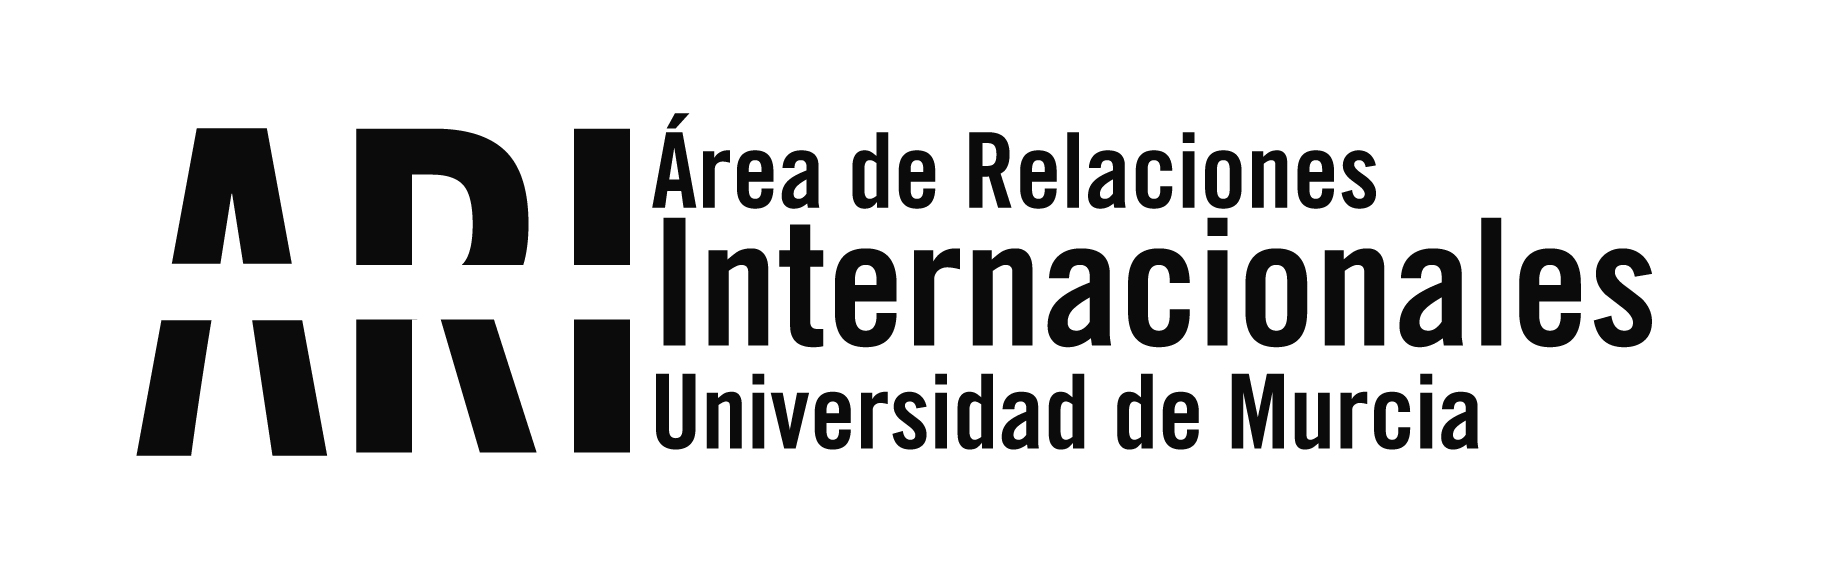 Bienvenida Universidad de Murcia Internacional 2013 2do Cuatrimestre y II Encuentro del Programa Padrino - Área de Relaciones Internacionales